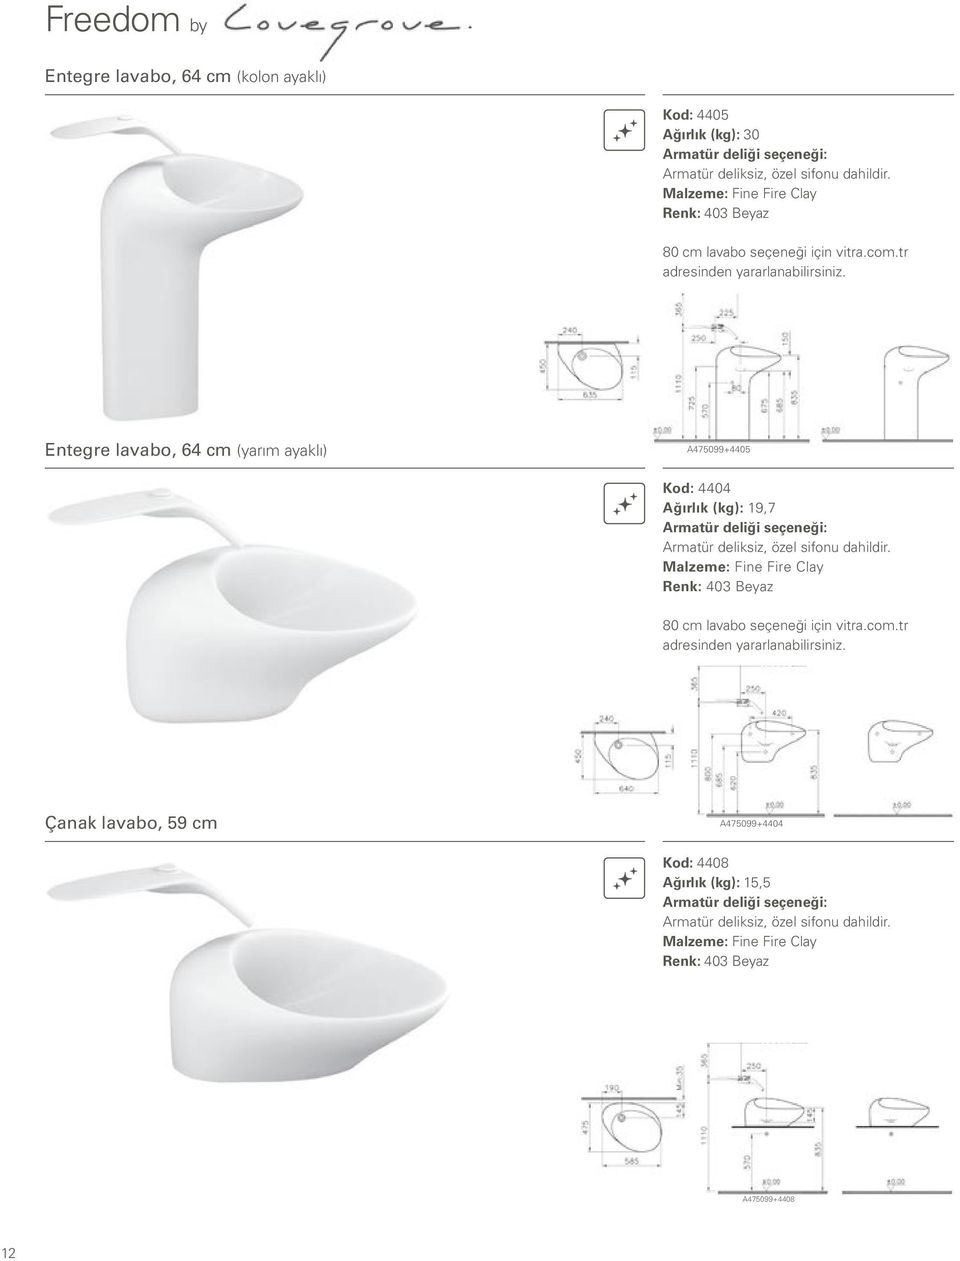 Entegre lavabo, 64 cm (yarım ayaklı) A475099+4405 Kod: 4404 Ağırlık (kg): 19,7 Armatür deliği seçeneği: Armatür deliksiz, özel sifonu dahildir.